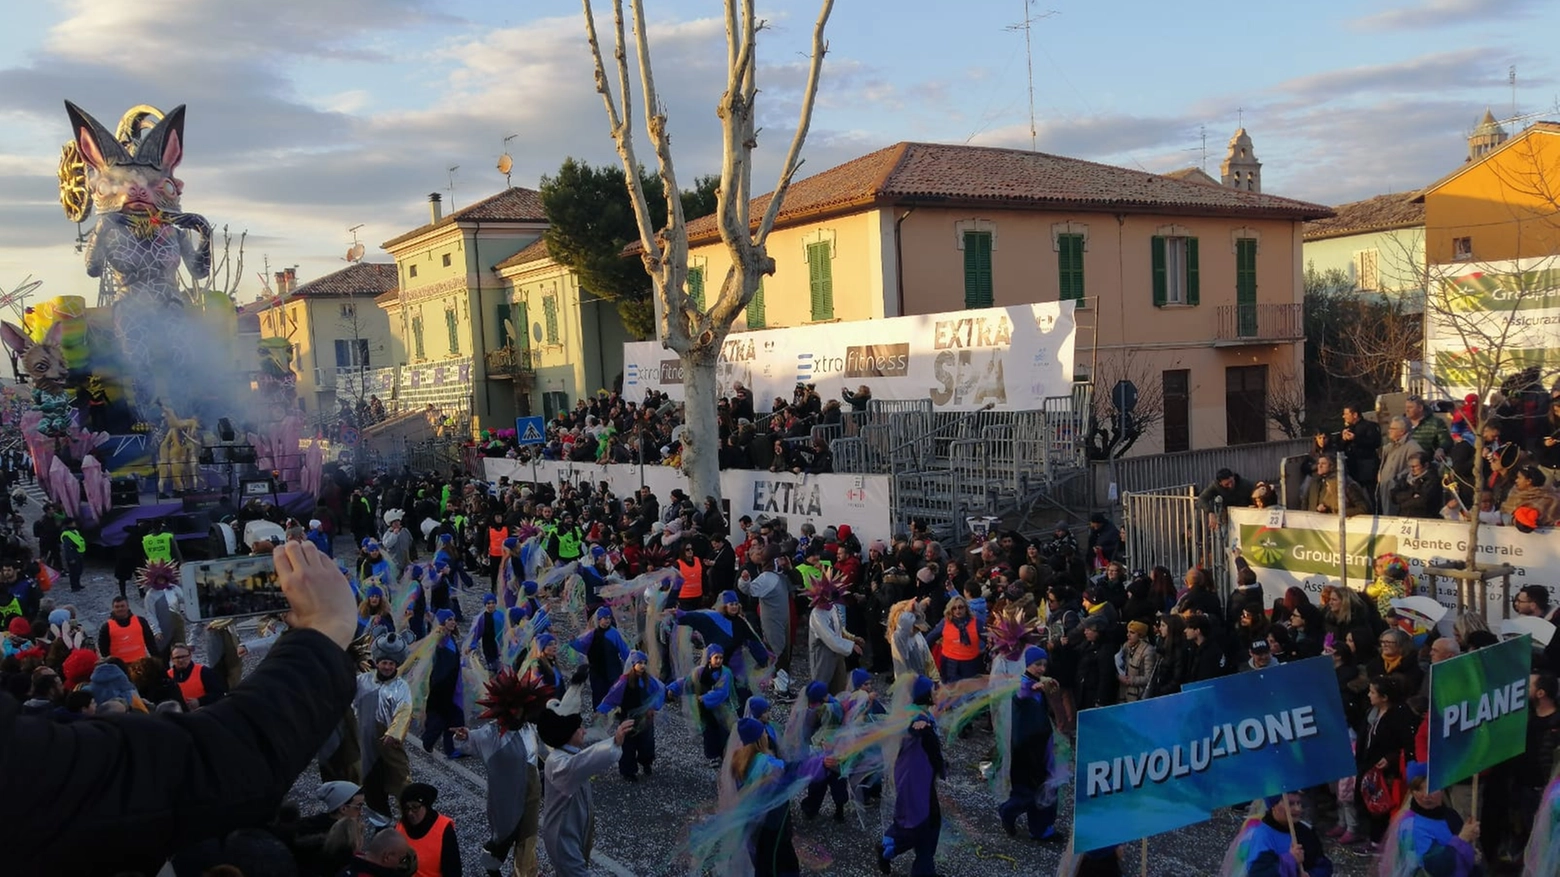 La sfilata del carnevale di Fano (foto Petrelli)